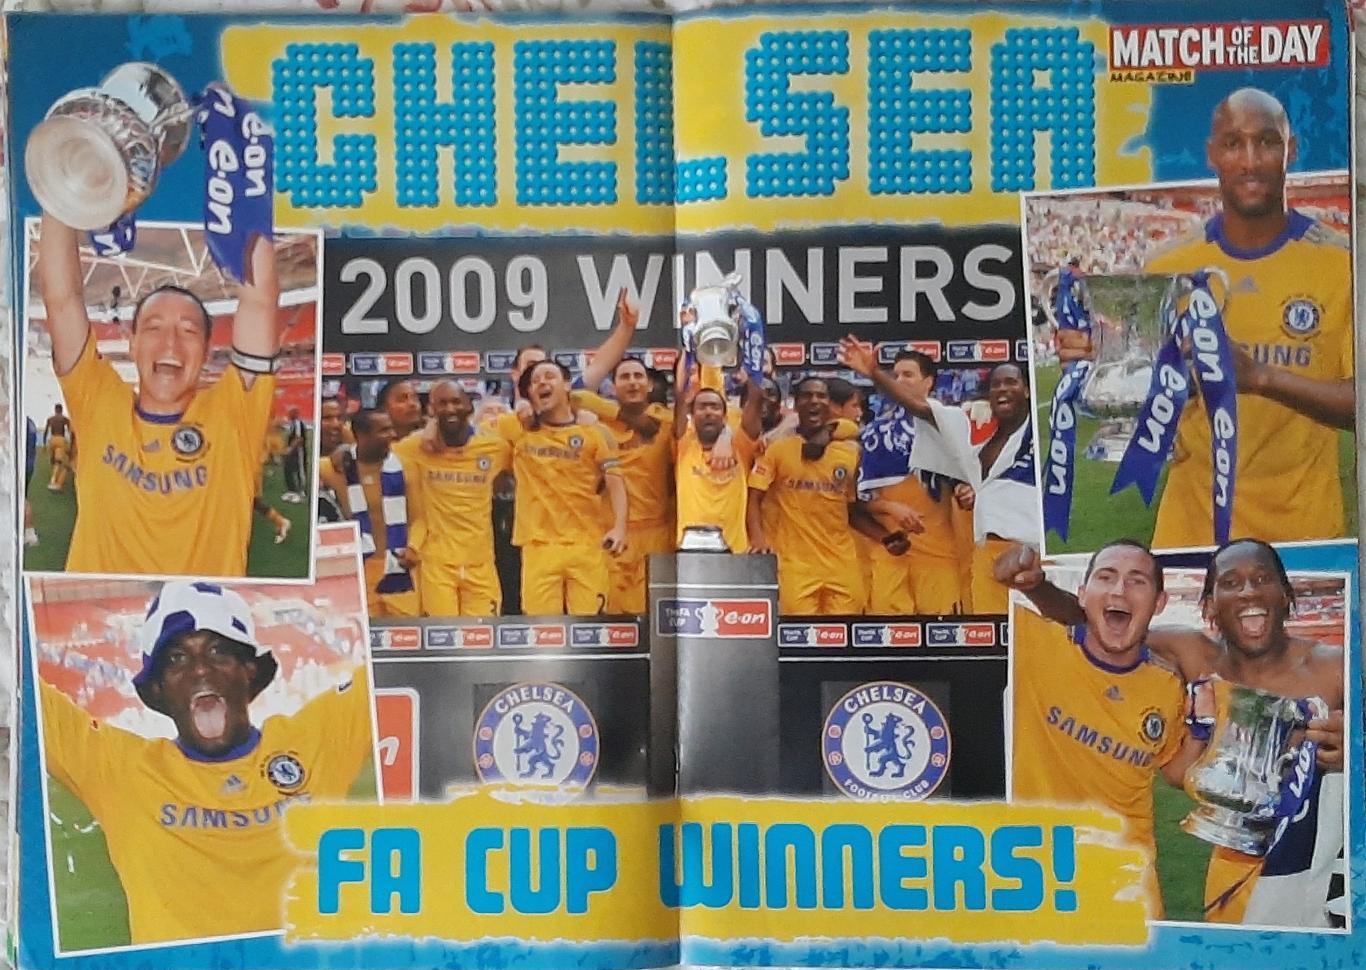 Постер Chelsea / Челсі володар Кубка Англії з журналу Match of the day 2009